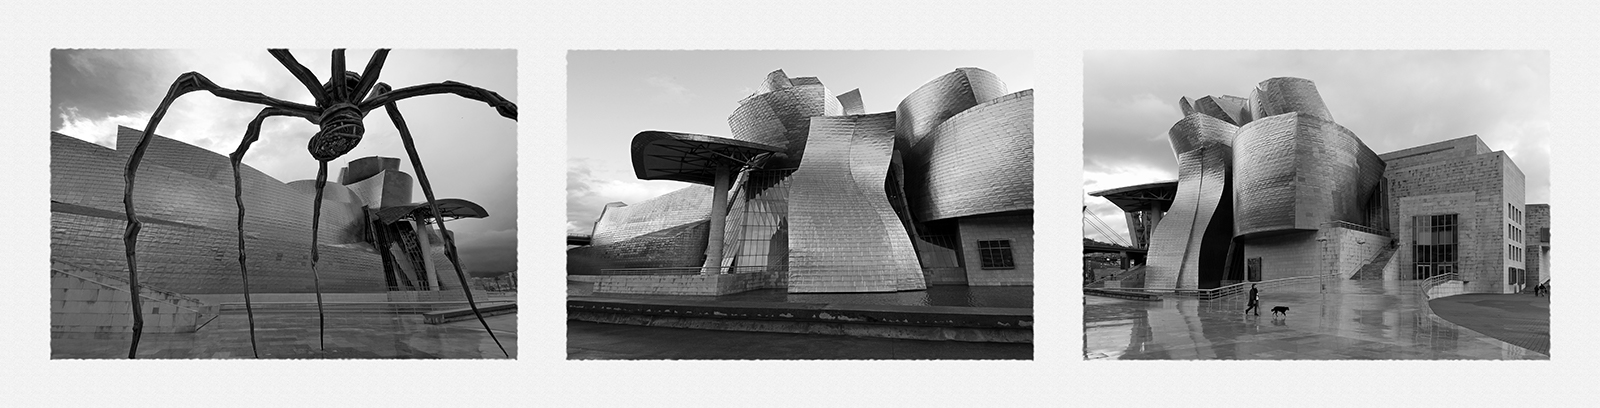 Guggenheim 5 granito gris.jpg